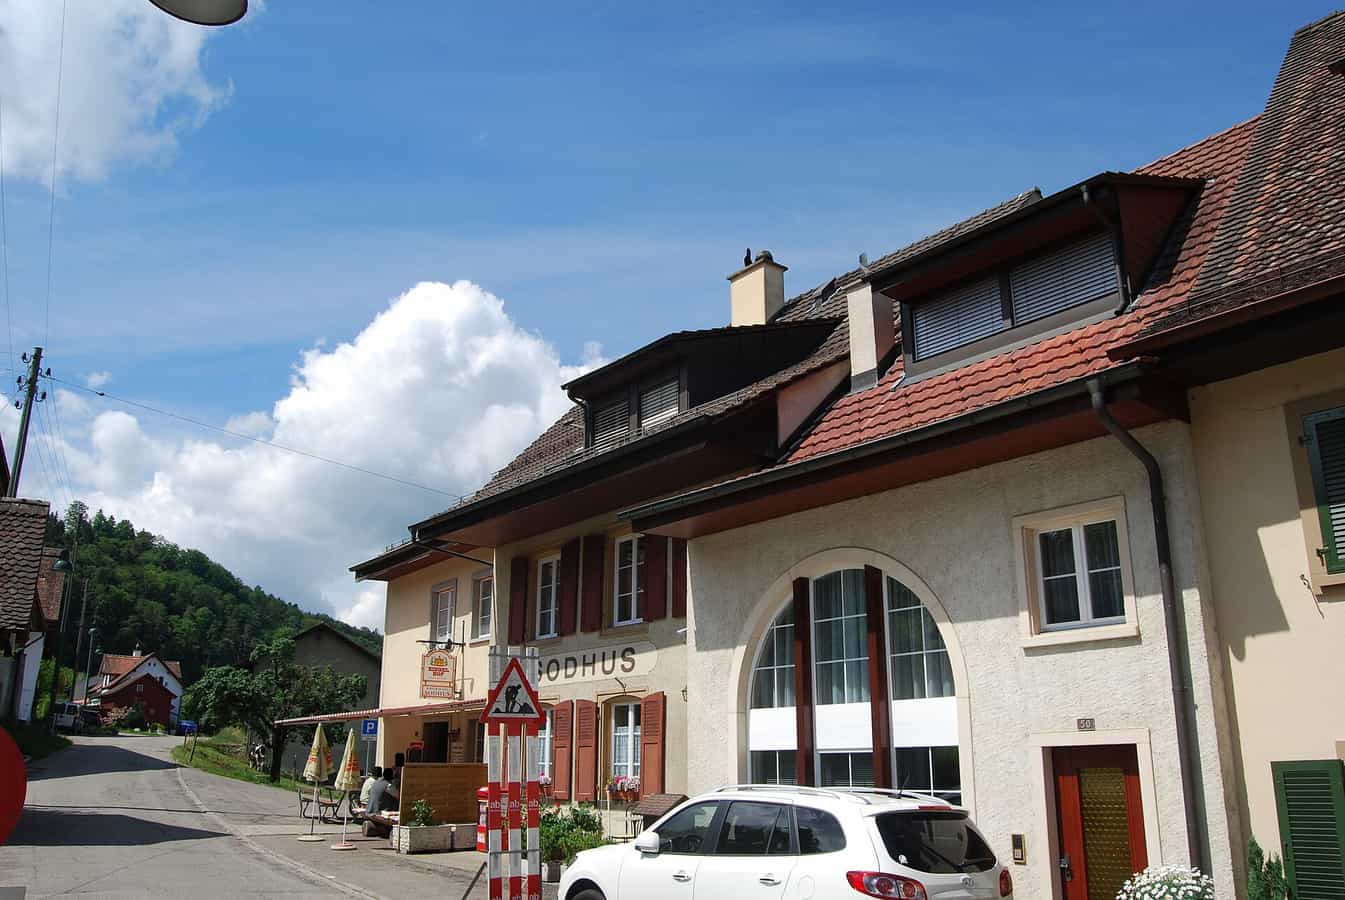 Restaurant Sodhus in Titterten, Kanton Basel-Landschaft